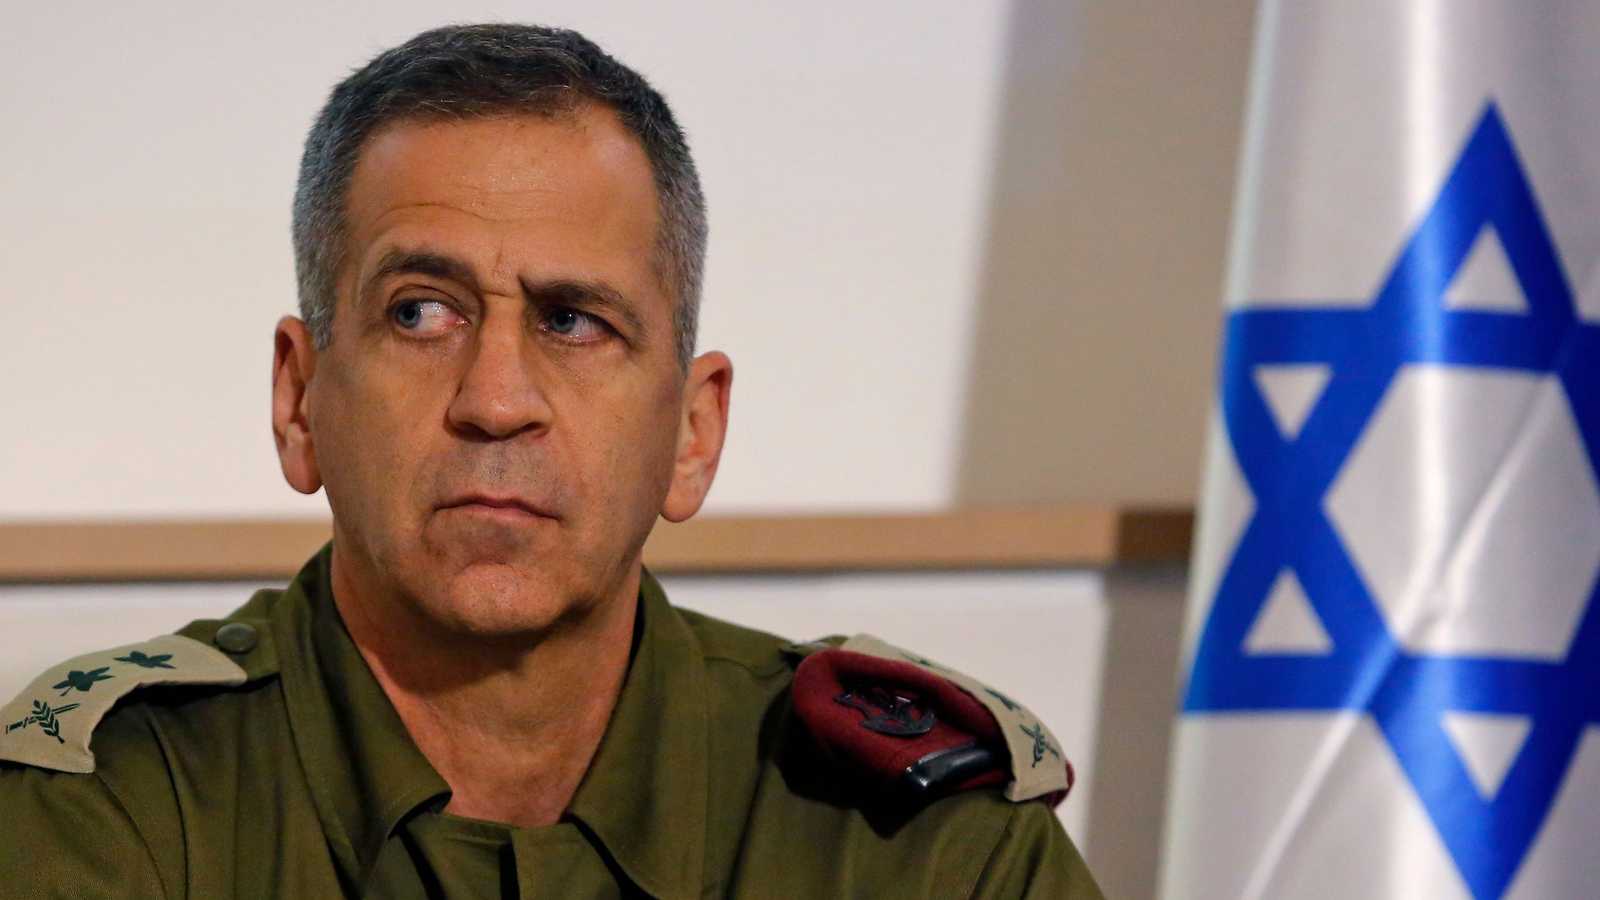 رئيس هيئة الأركان (كوخافي) في مؤتمر صحافي في تل أبيب يوم 12 نوفمبر 2019